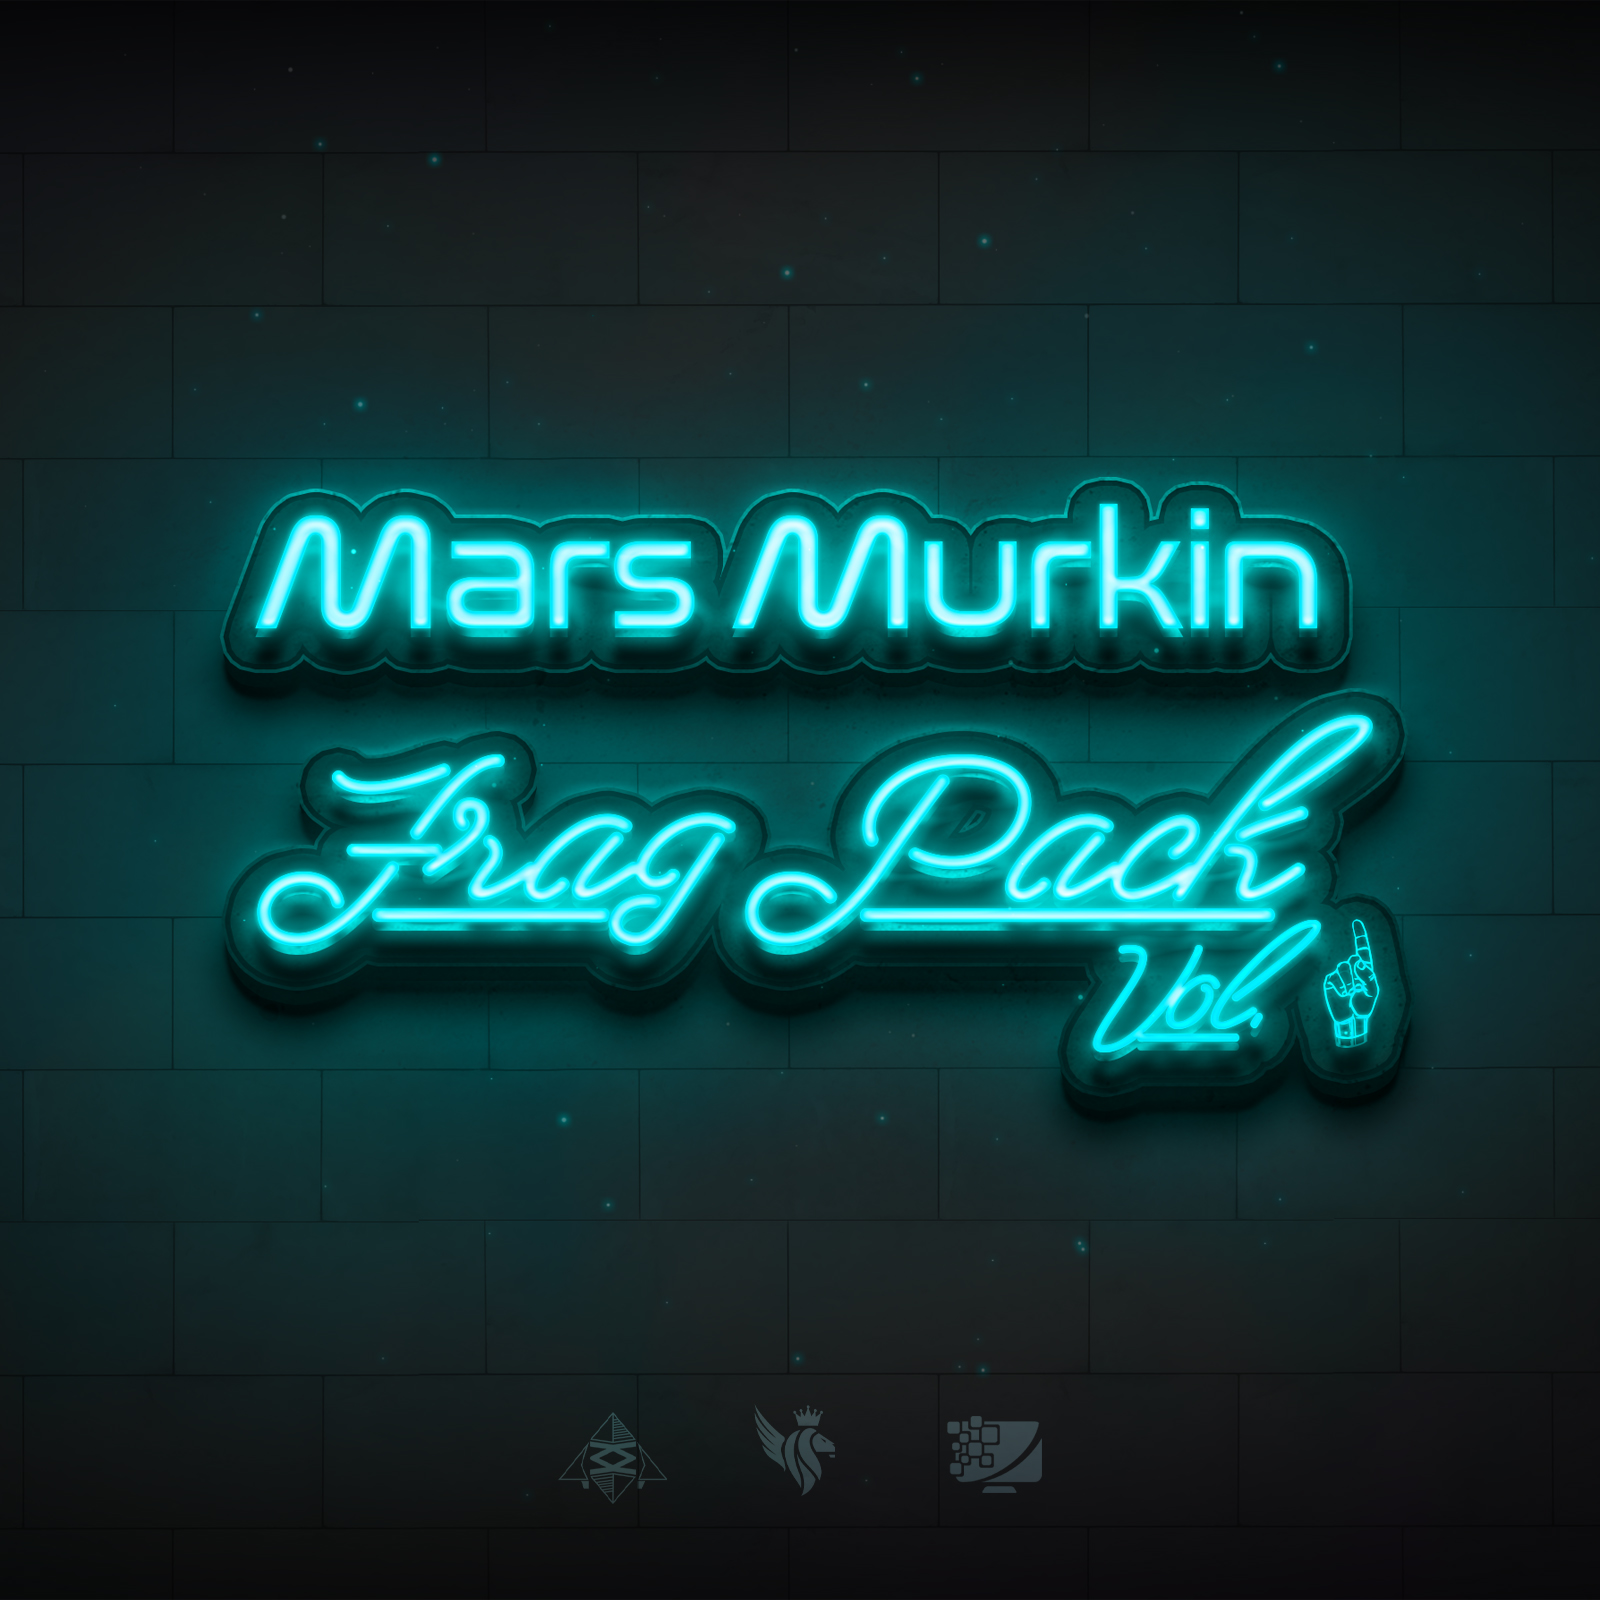 Mars Murkin Frag Pack